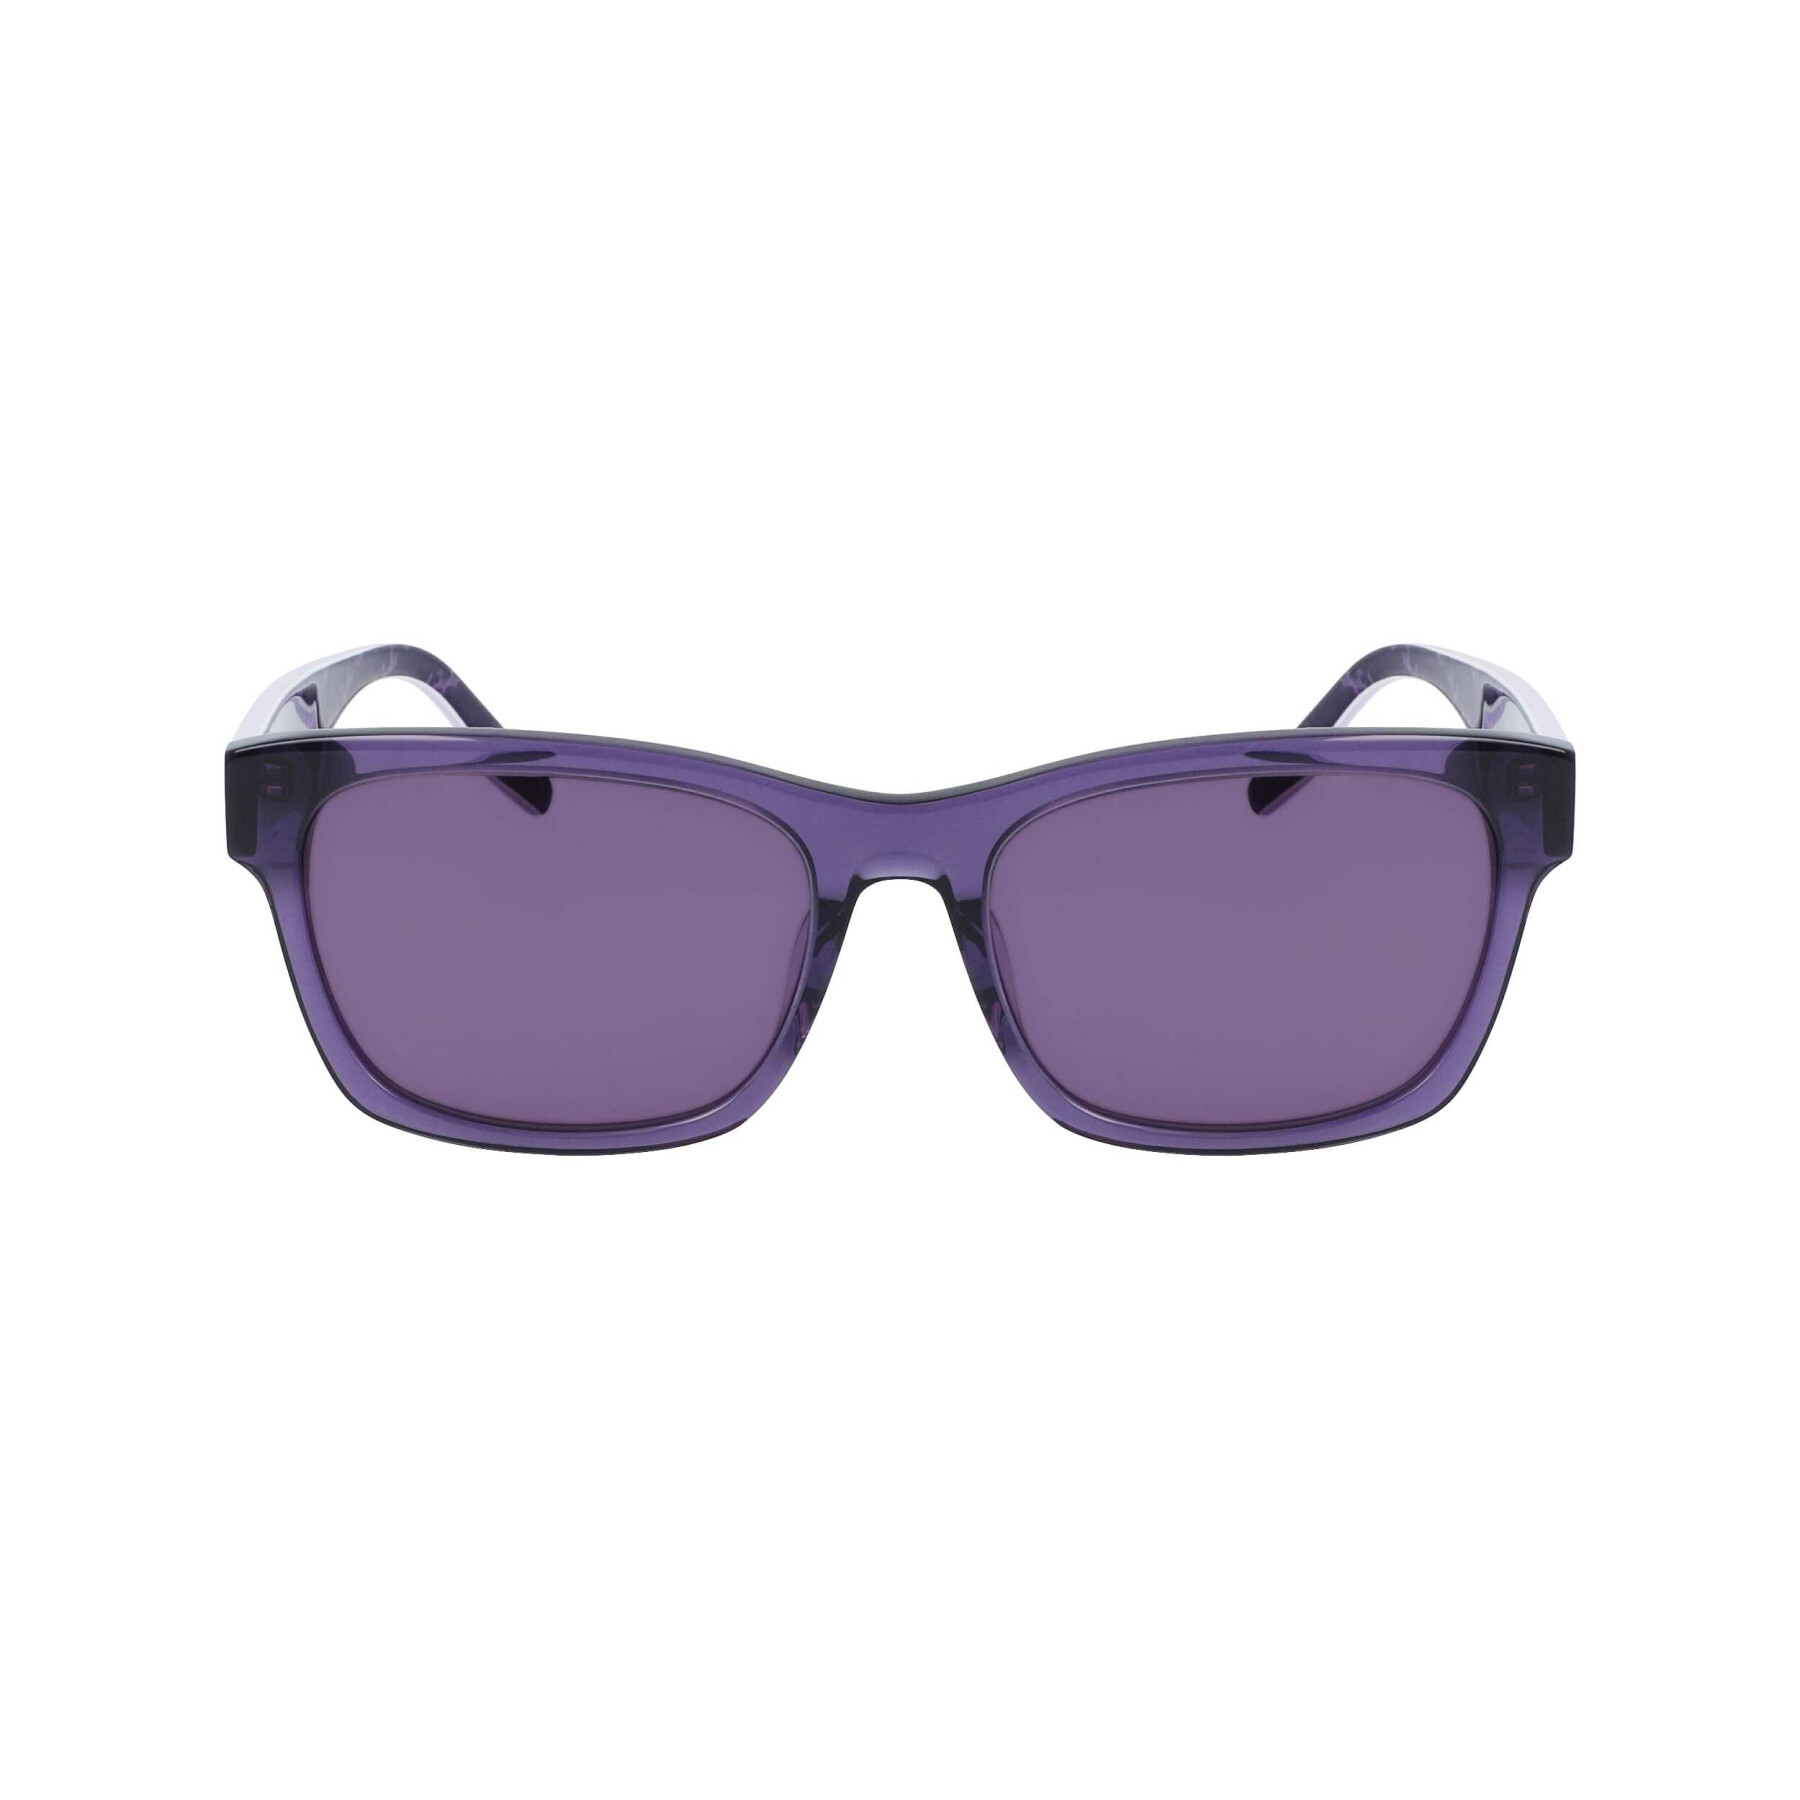 Gafas de sol para mujer Converse CV501SLLSTAR5